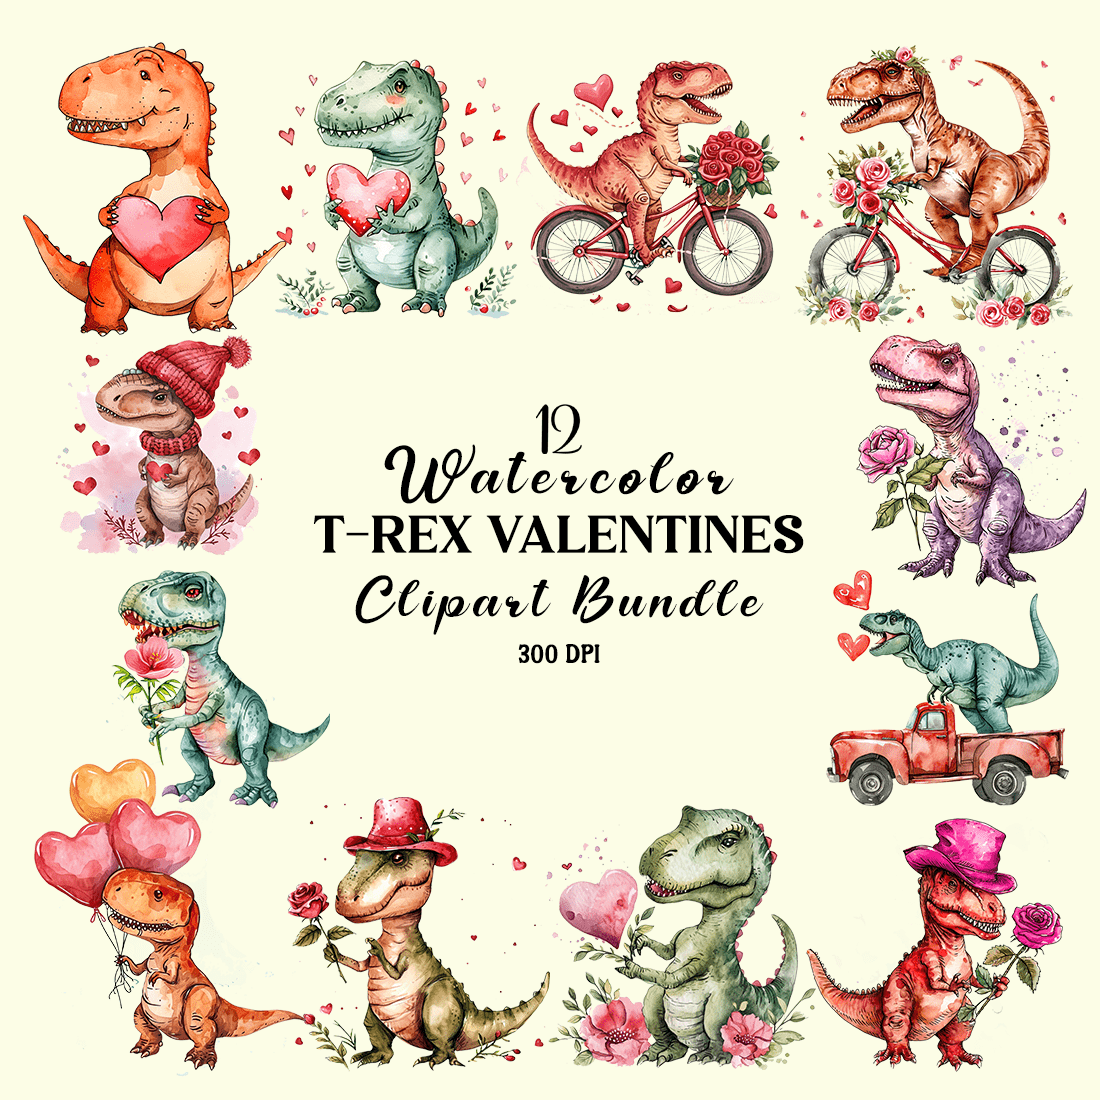 Watercolor T-Rex Valentines Clipart Bundle cover image.